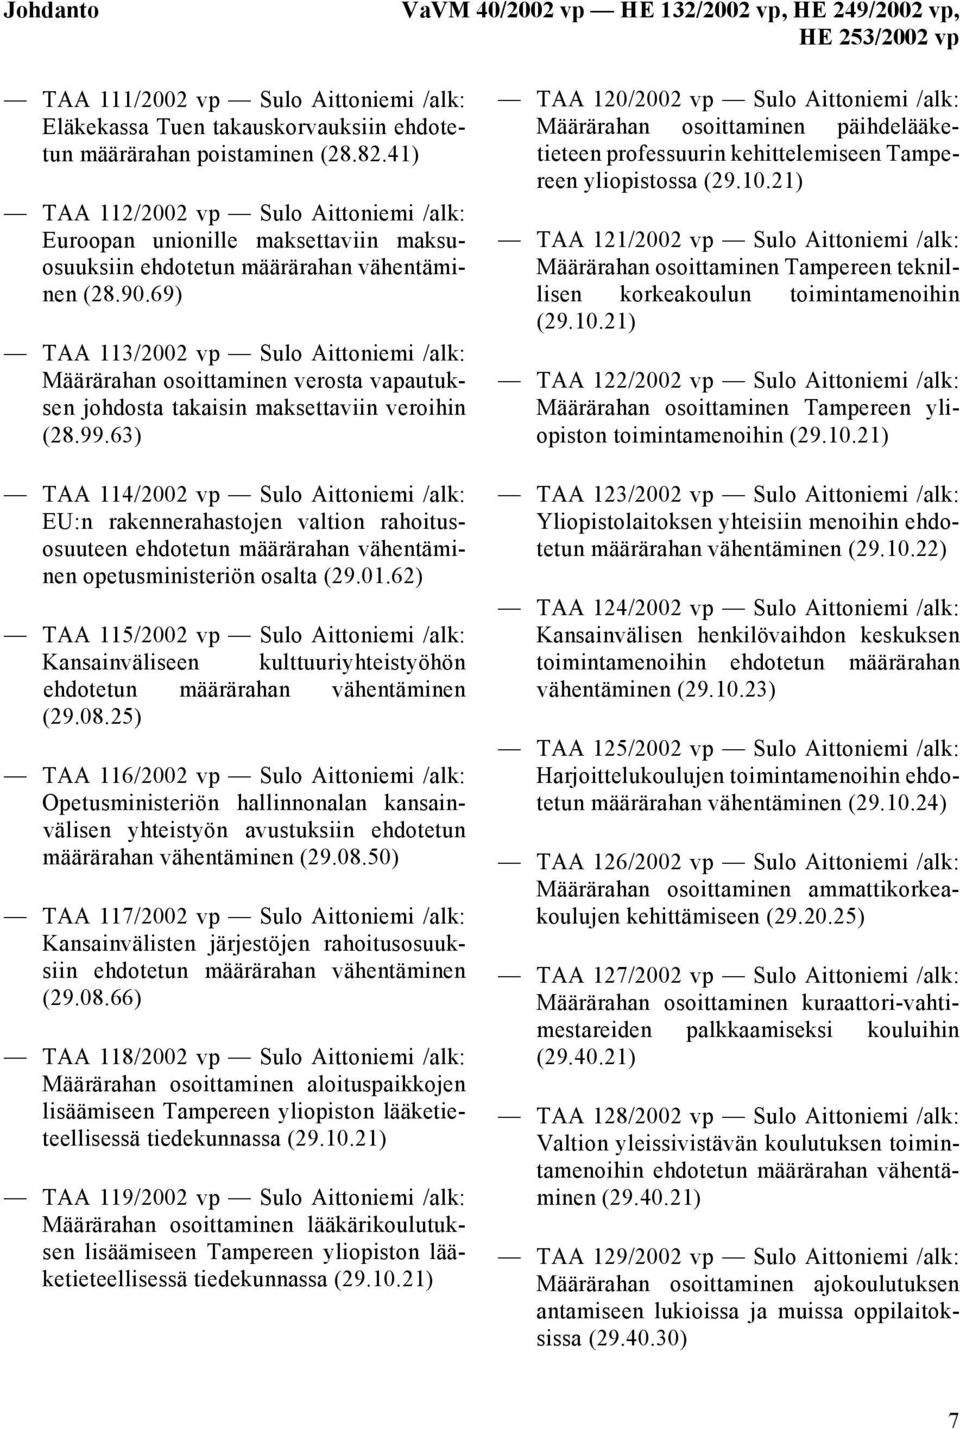 69) TAA 113/2002 vp Sulo Aittoniemi /alk: Määrärahan osoittaminen verosta vapautuksen johdosta takaisin maksettaviin veroihin (28.99.